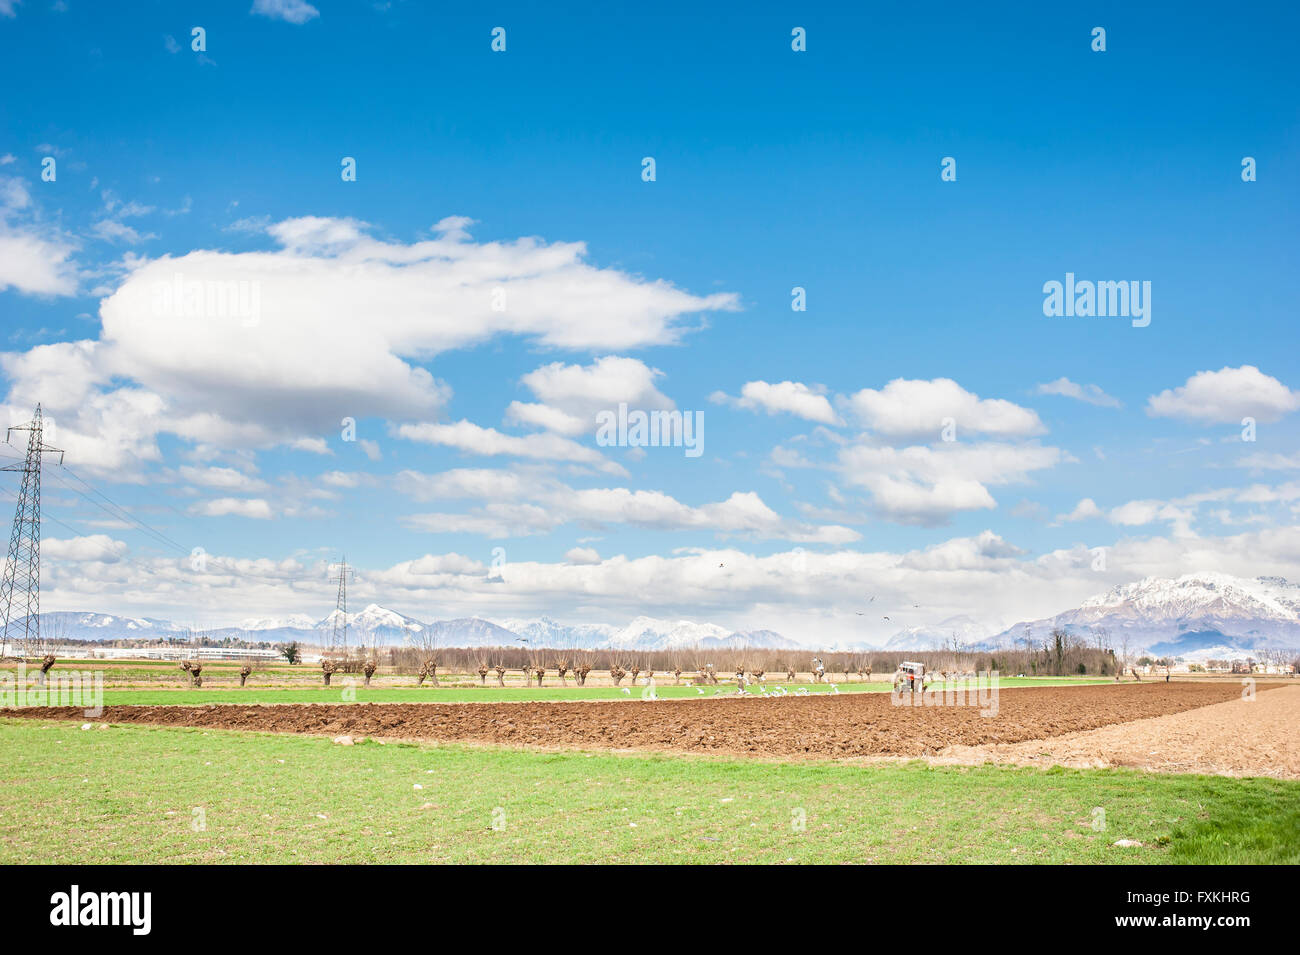 El paisaje agrícola. Con el tractor en un campo arado. Las montañas en el fondo. Foto de stock